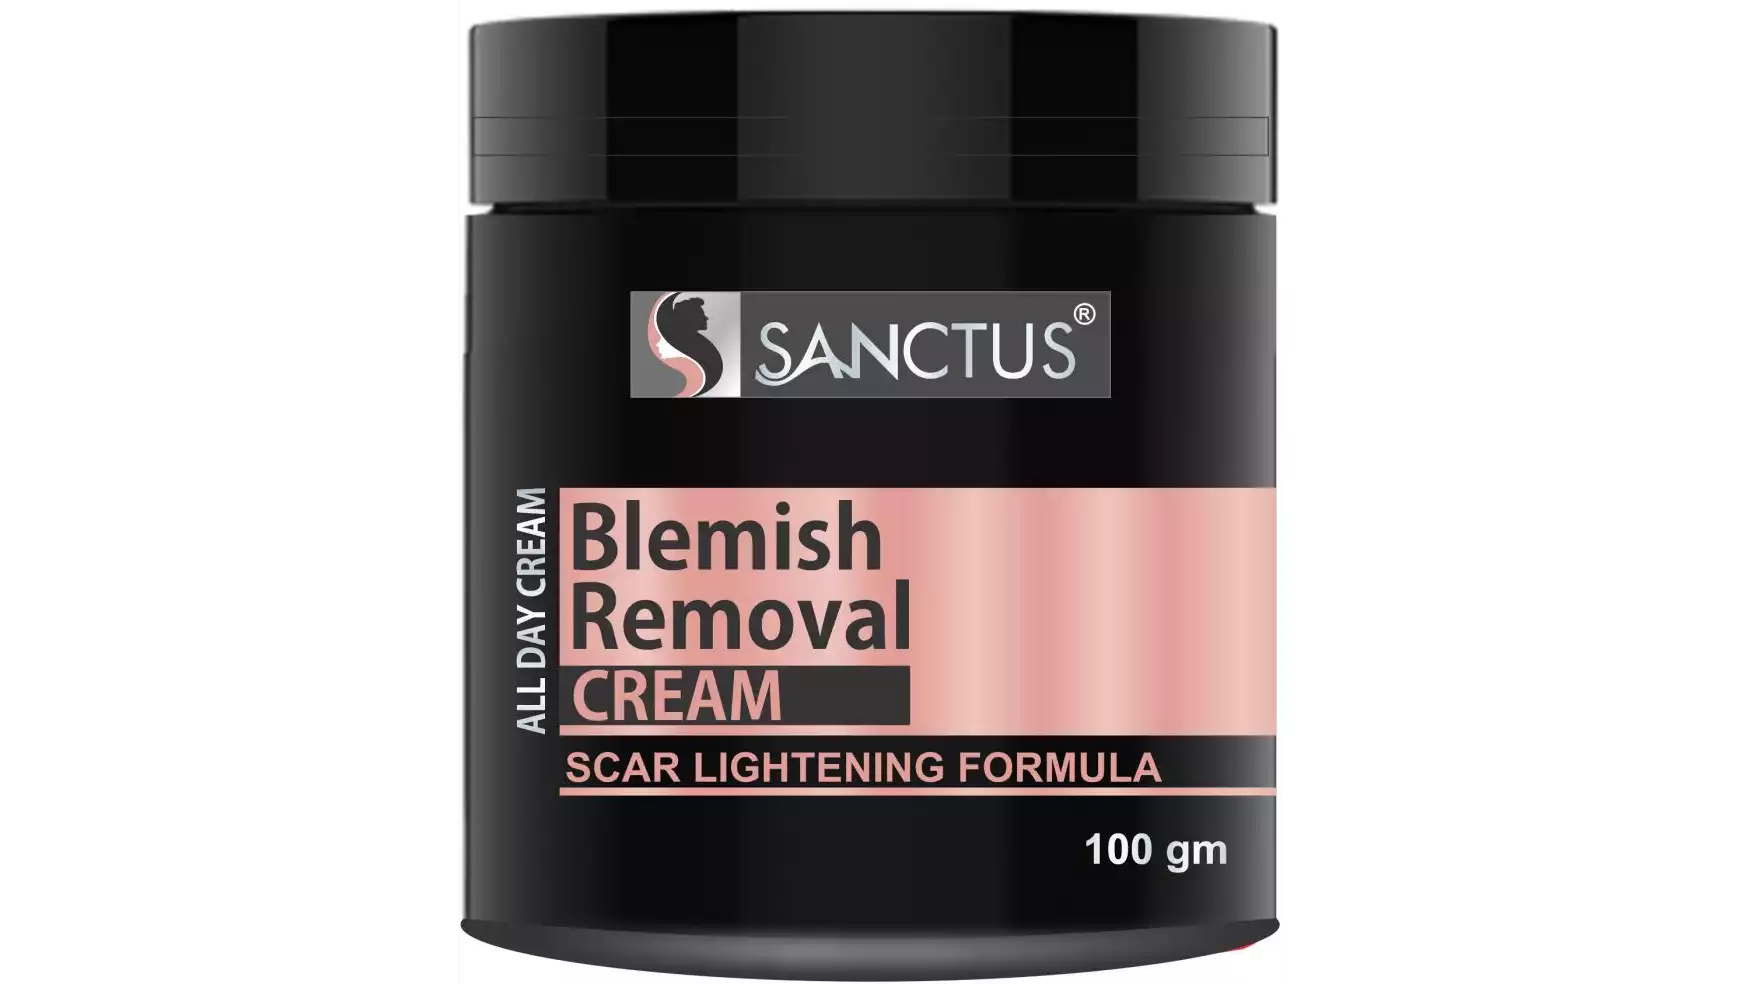 Sanctus Blemish Removal Cream (100g)